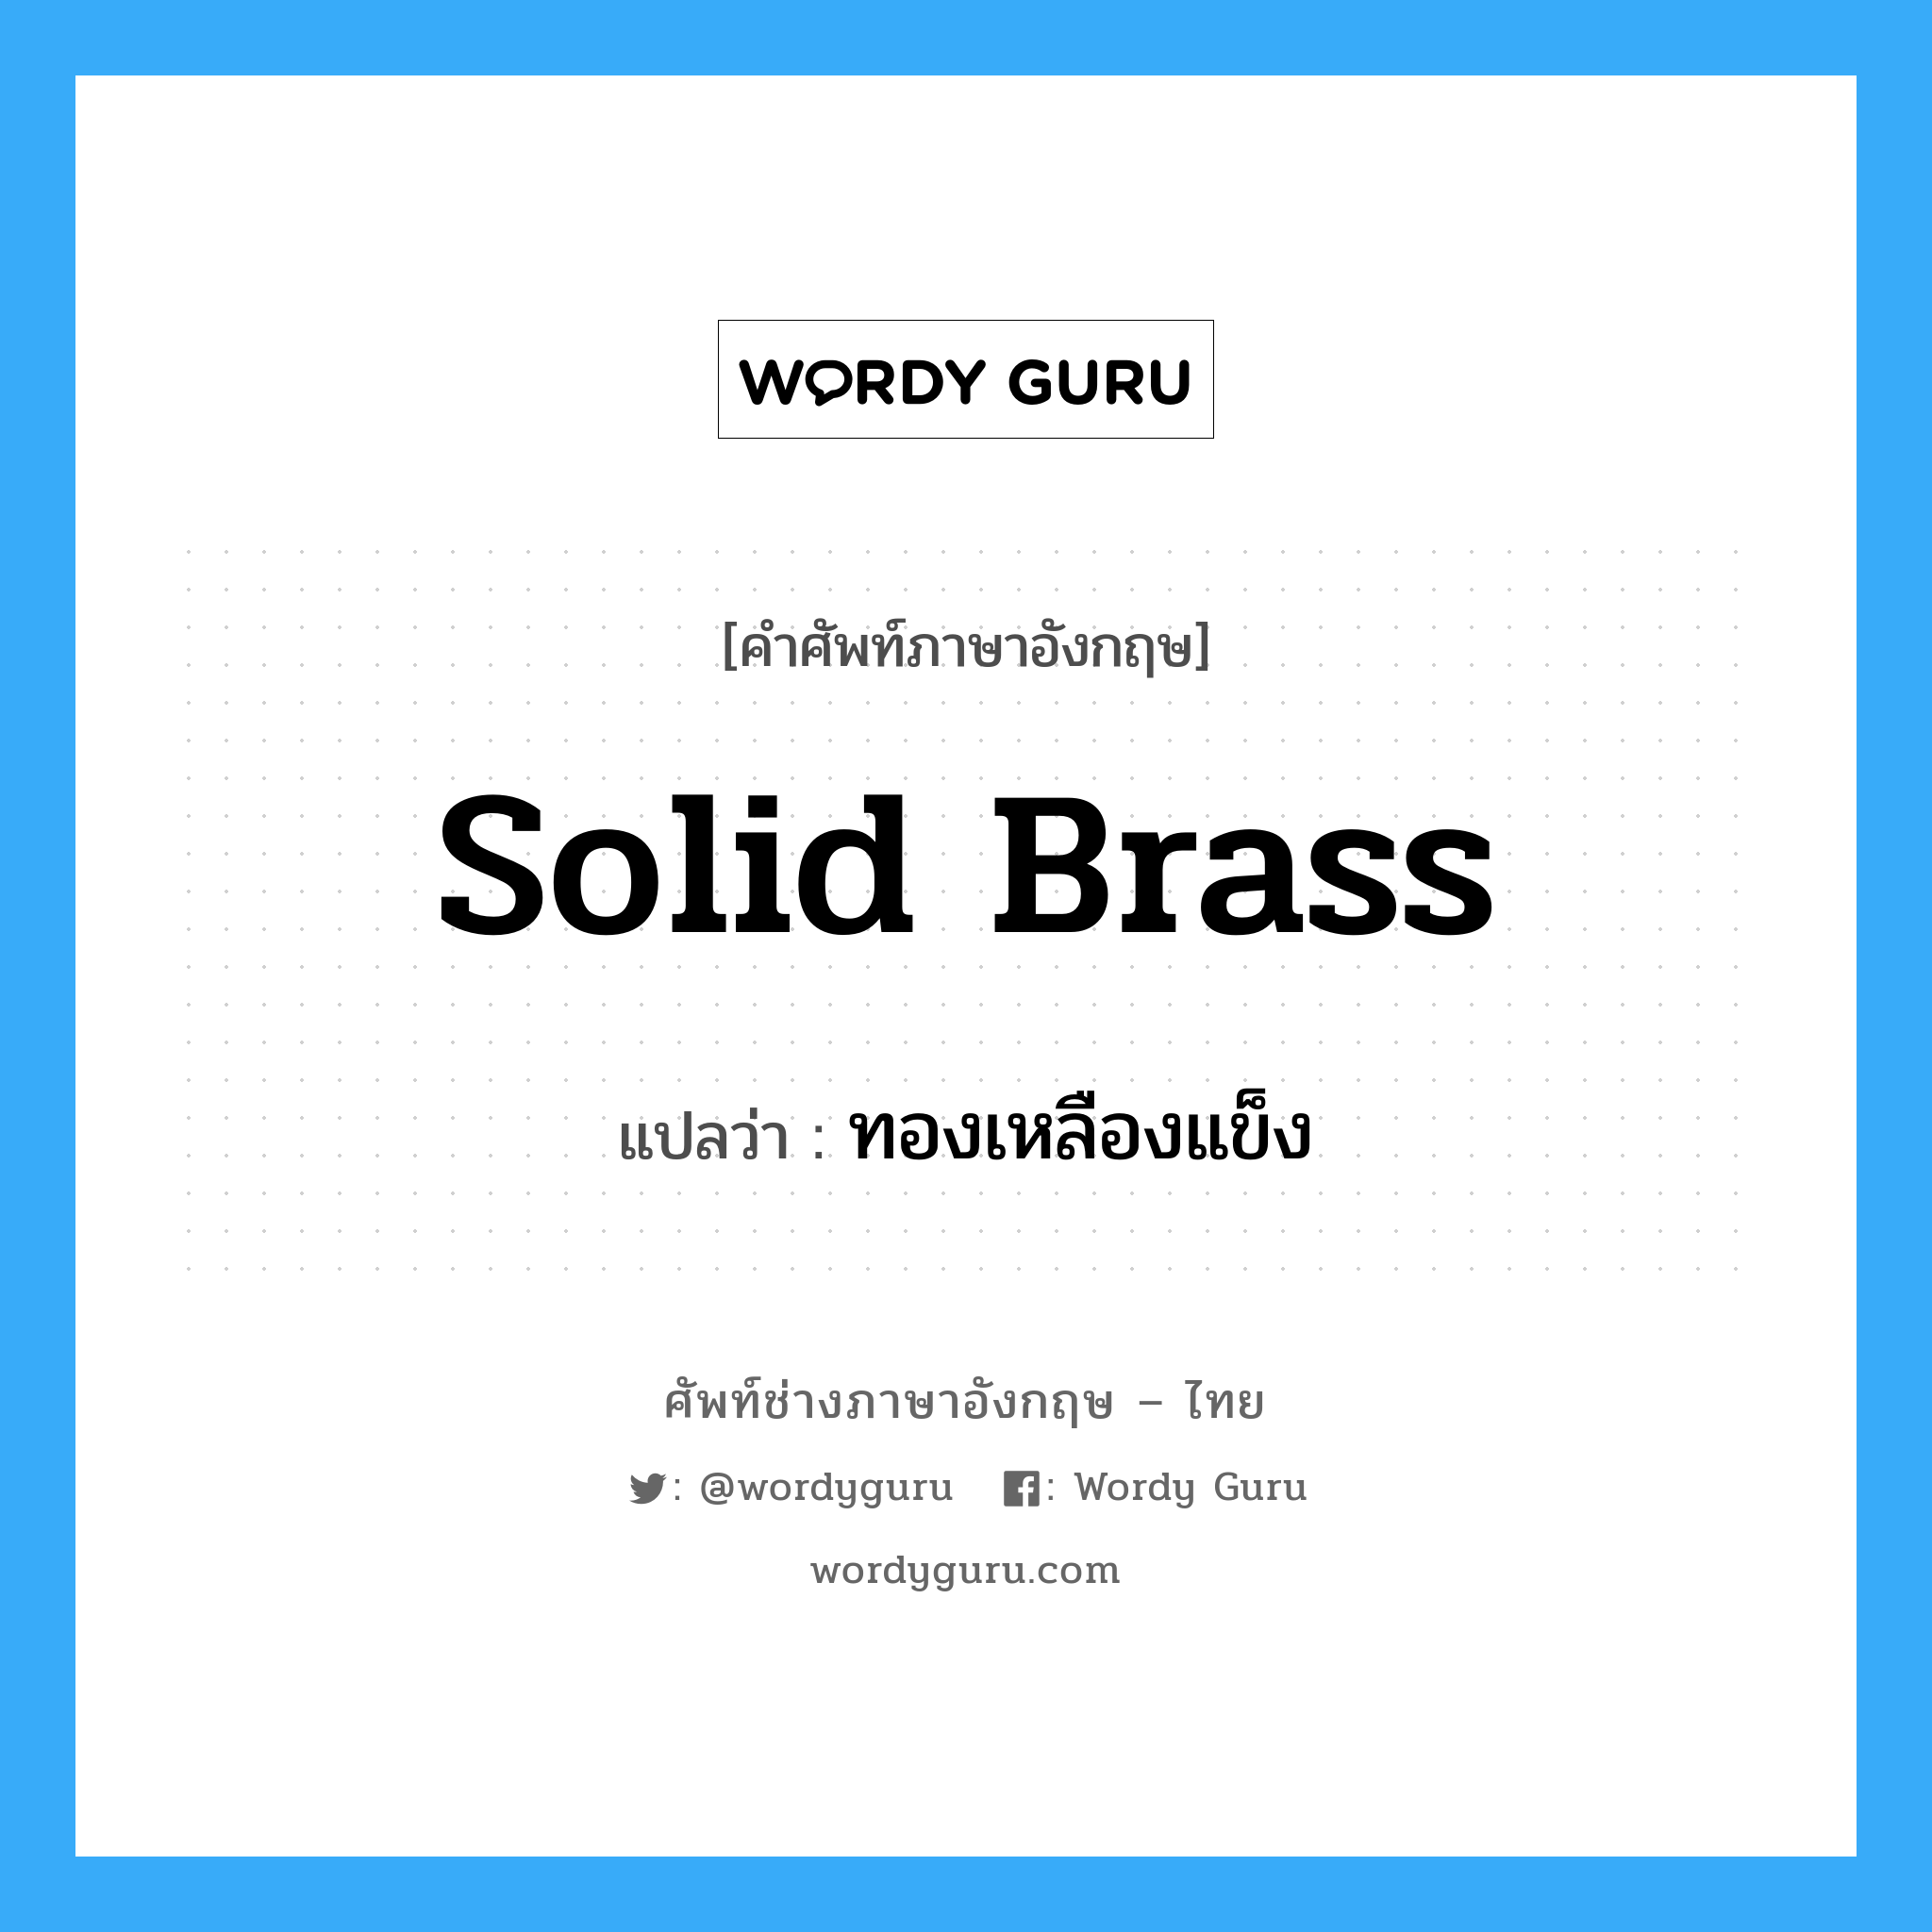 solid brass แปลว่า?, คำศัพท์ช่างภาษาอังกฤษ - ไทย solid brass คำศัพท์ภาษาอังกฤษ solid brass แปลว่า ทองเหลืองแข็ง